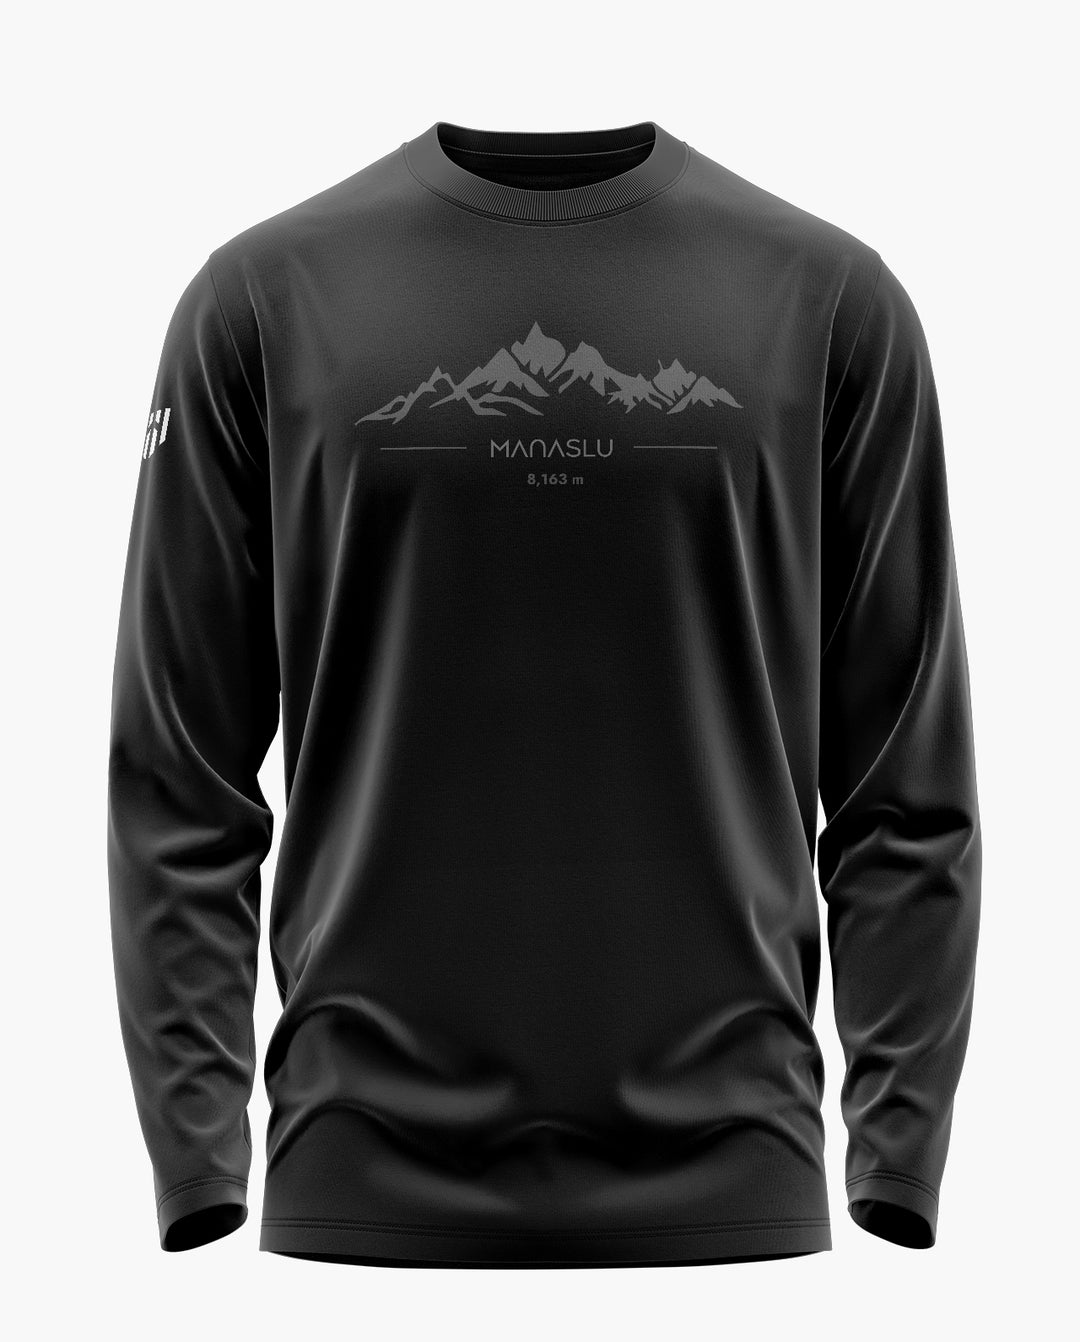 Manaslu Trekker Full Sleeve T-Shirt